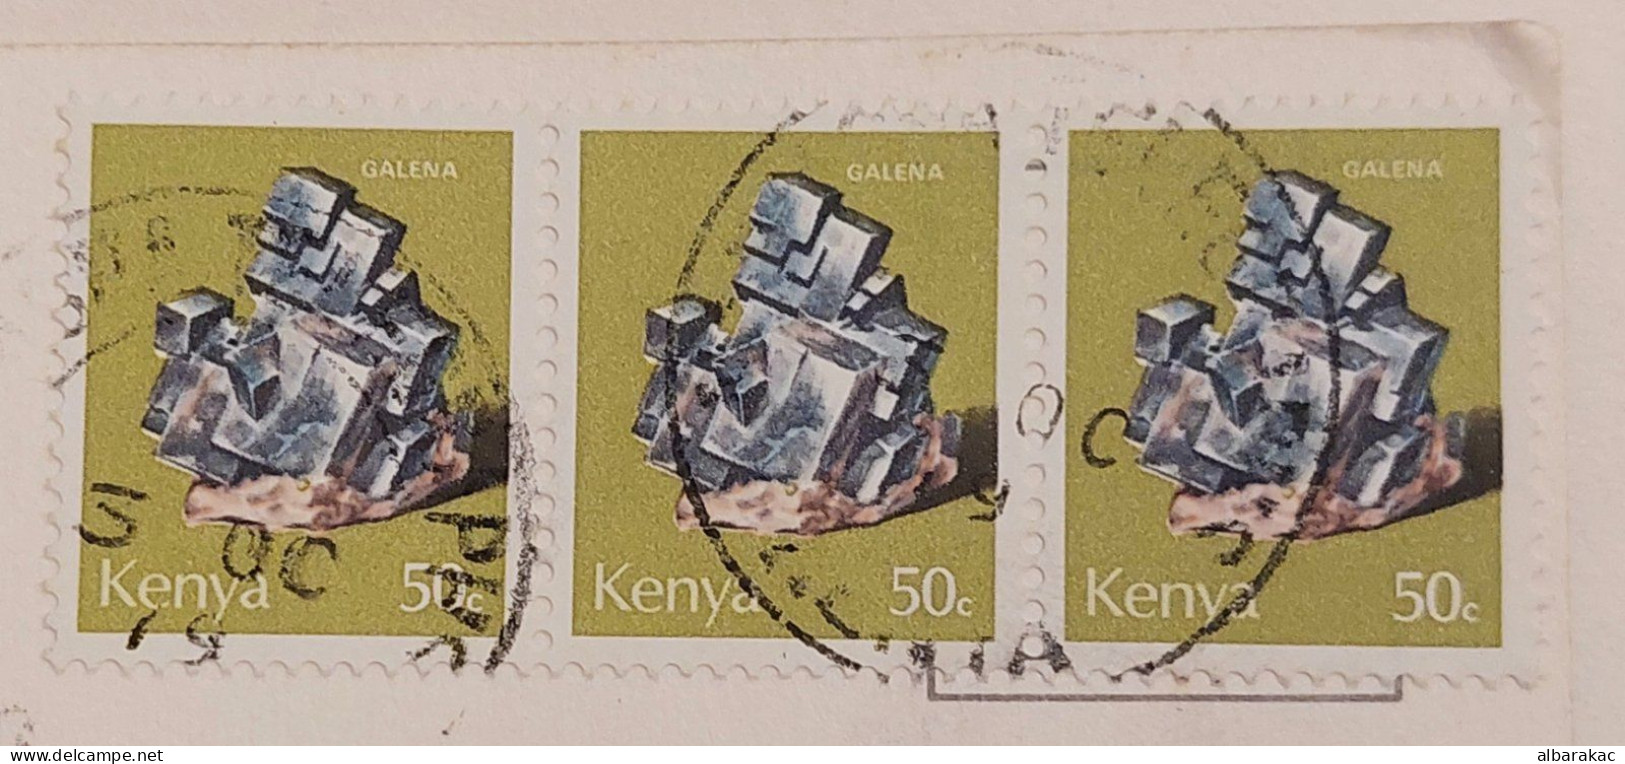 Kenya -  Girl  ,NUS ETHNIQUES Adultes ( Afrique Noire ) , Stamp  Used Air Mail 1979 - Kenya